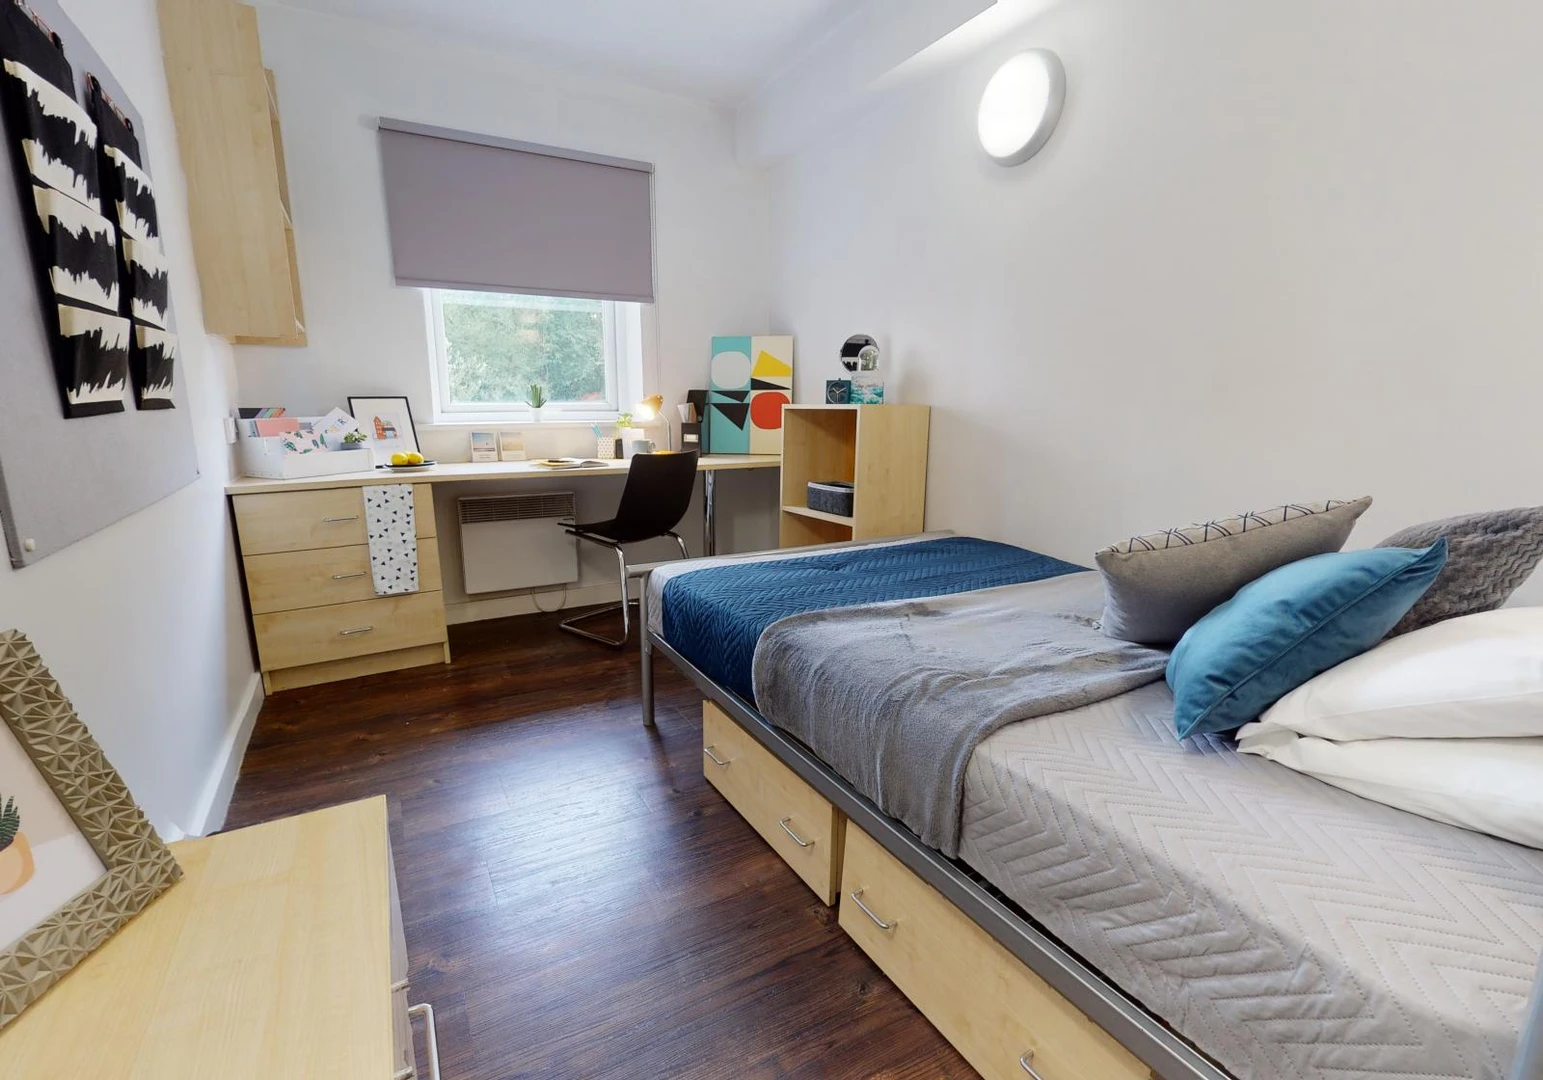 Alquiler de habitación en piso compartido en Huddersfield